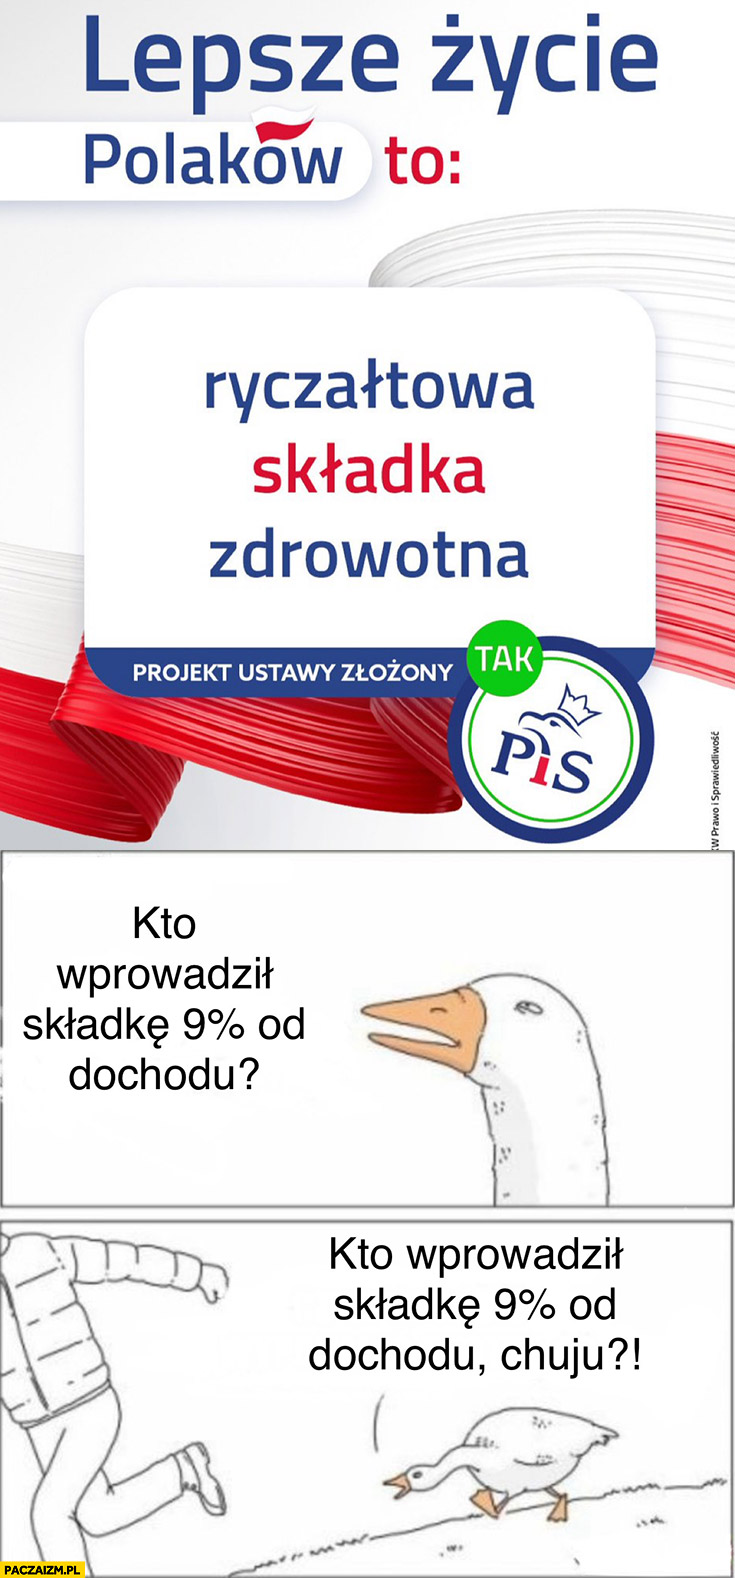 Reklama PiS lepsze życie Polaków to ryczałtowa składka zdrowotna kto wprowadził składkę 9% procent od dochodu? Gęś